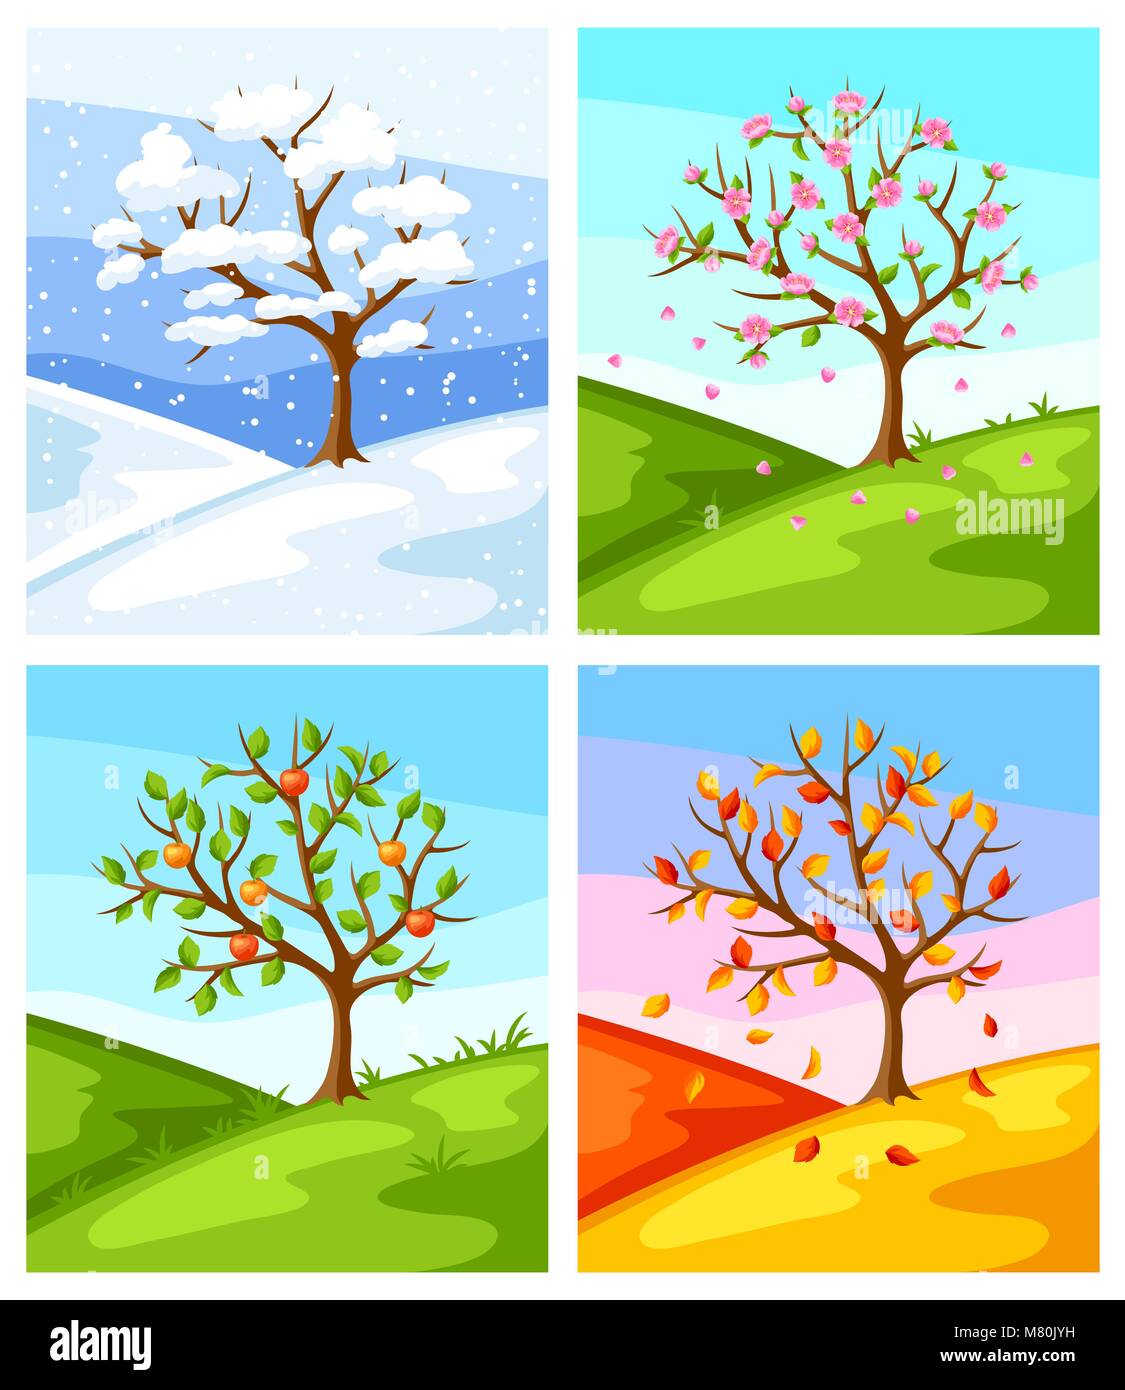 Vier Jahreszeiten. Abbildung: Baum und Landschaft im Winter, Frühling, Sommer, Herbst. Stock Vektor